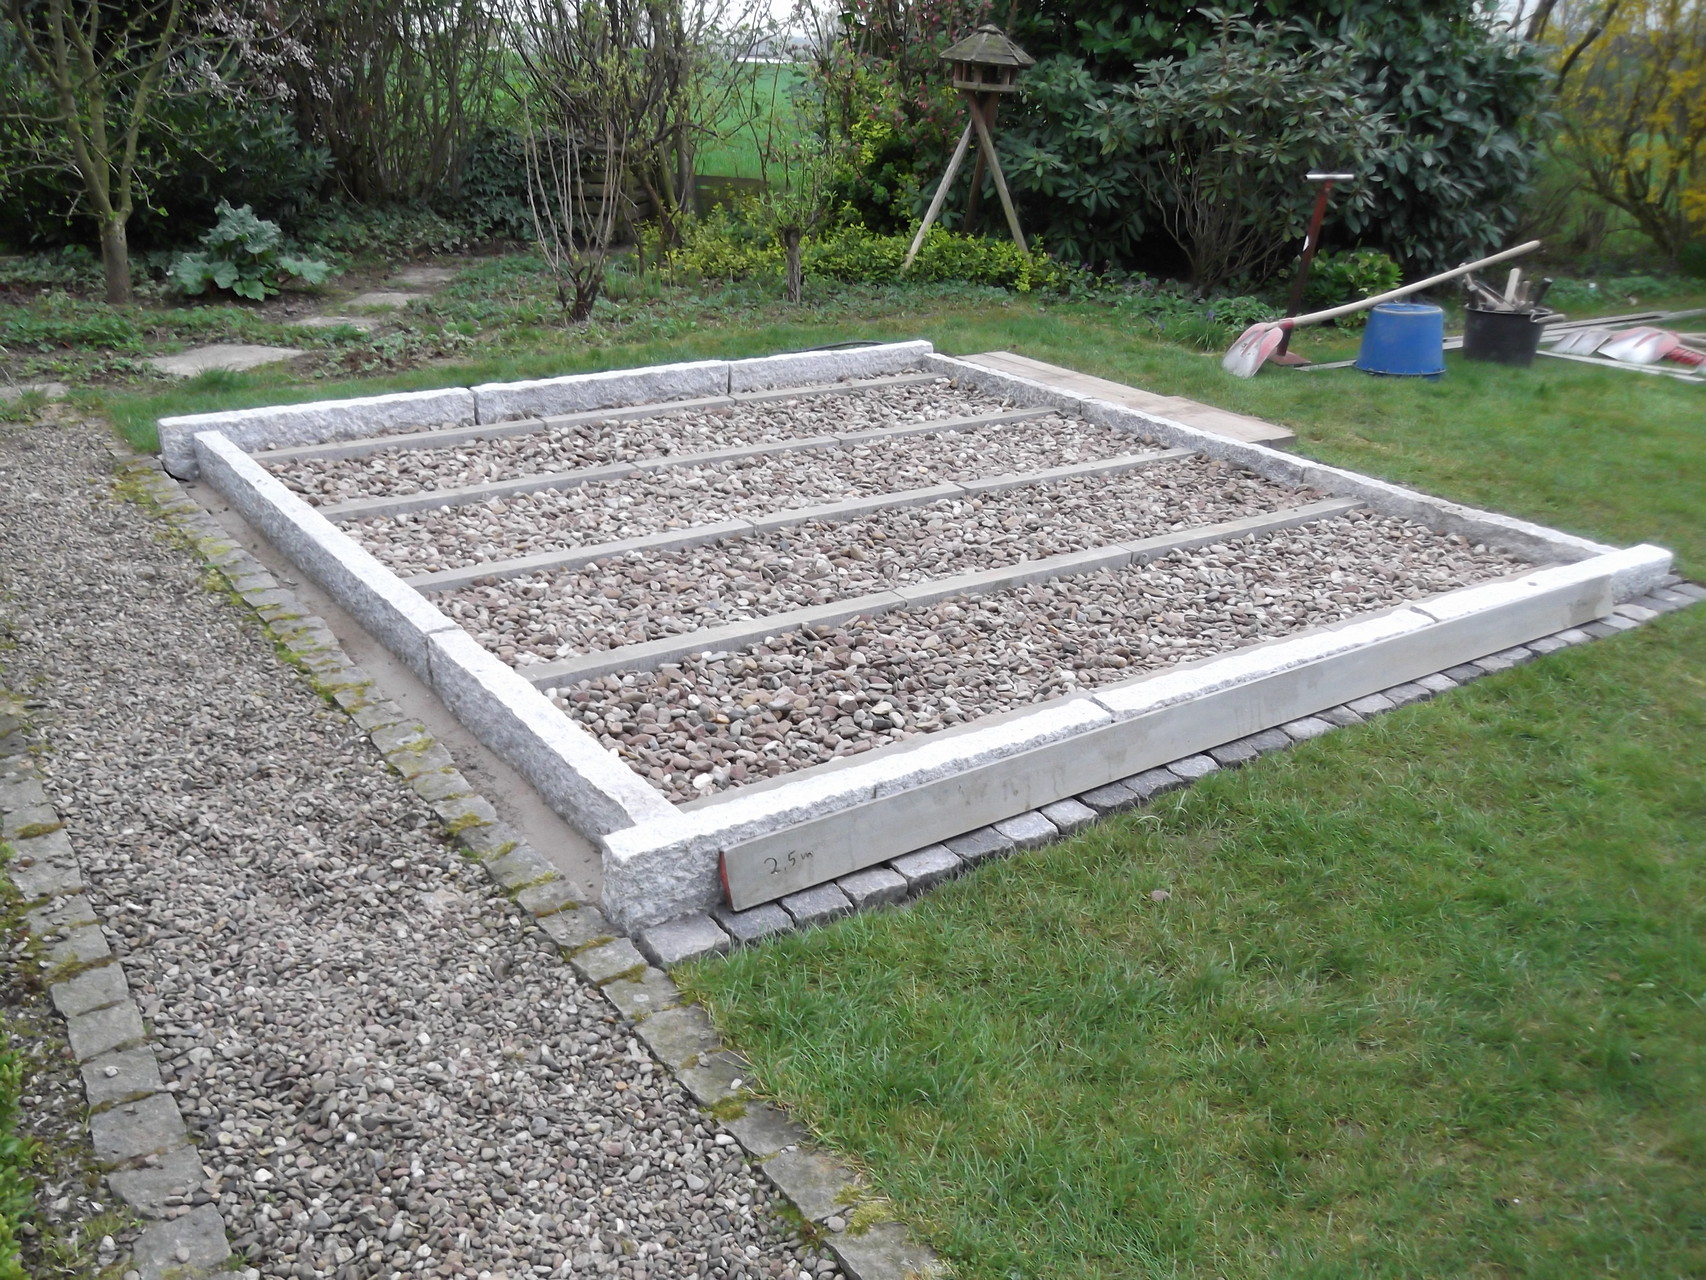 Korfmacher Gartengestaltung lässt ein Gartendeck entstehen: ein Sitzplatz im Garten mit solidem Fundament.